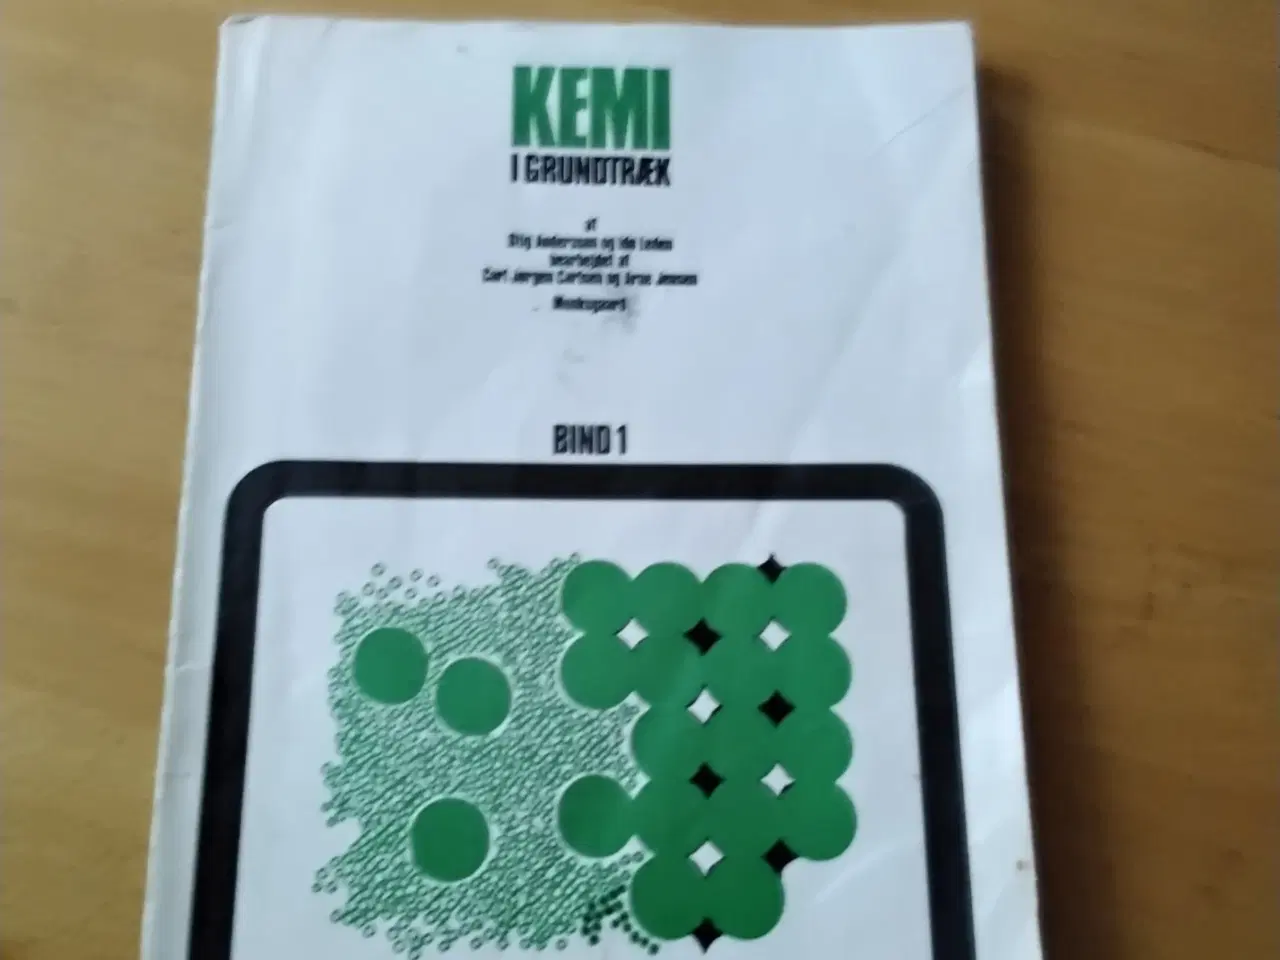 Billede 1 - Kemi i grundtræk af Stig Andersson m.fl.